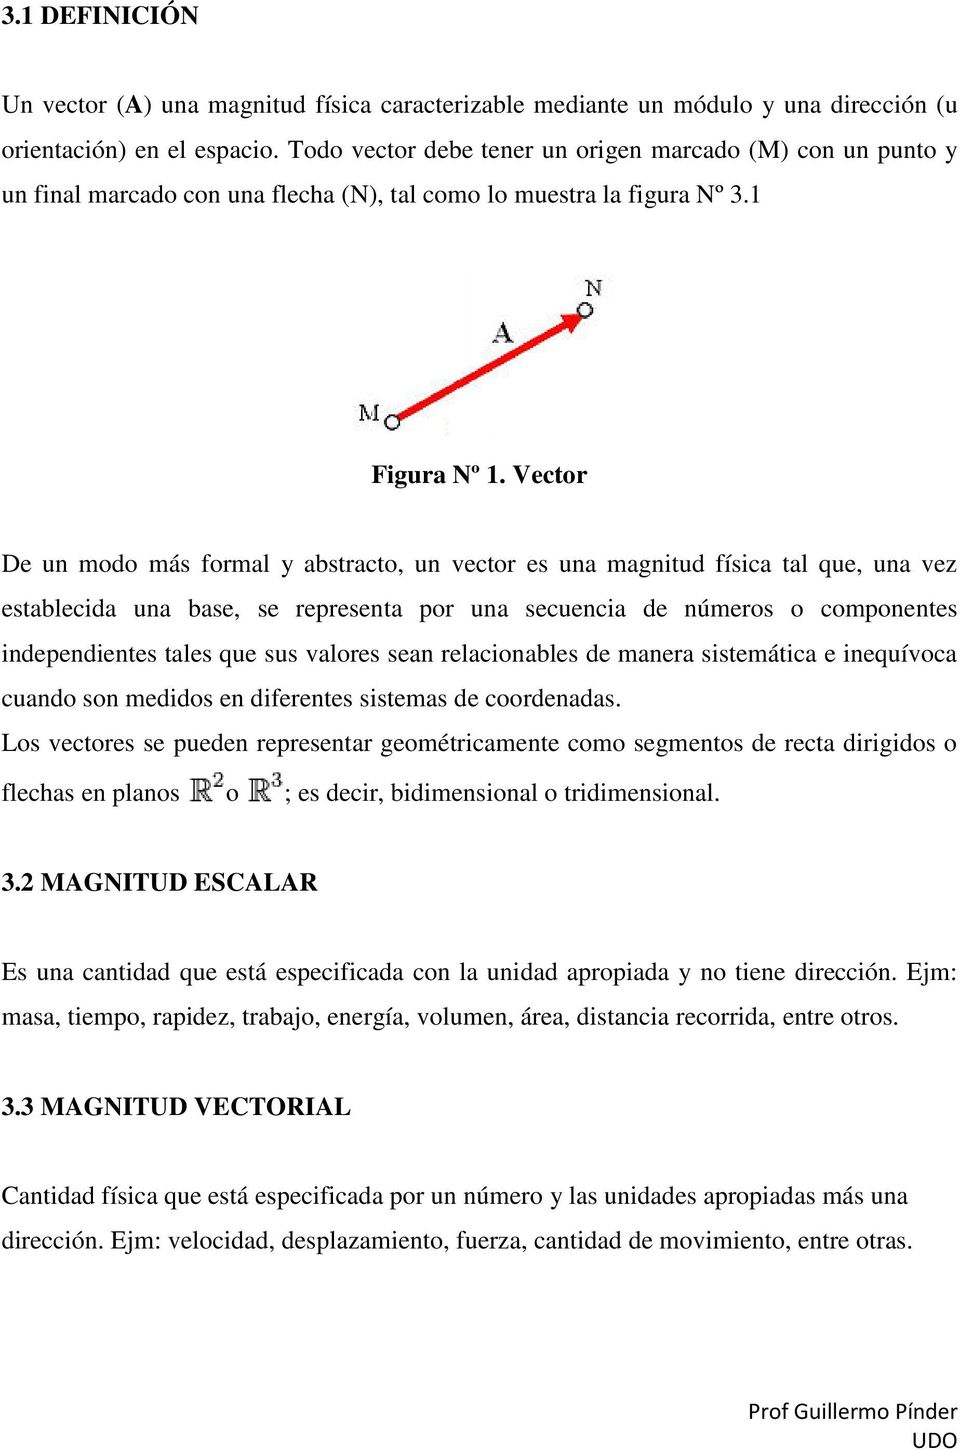 Vector De un modo más formal y abstracto, un vector es una magnitud física tal que, una vez establecida una base, se representa por una secuencia de números o componentes independientes tales que sus